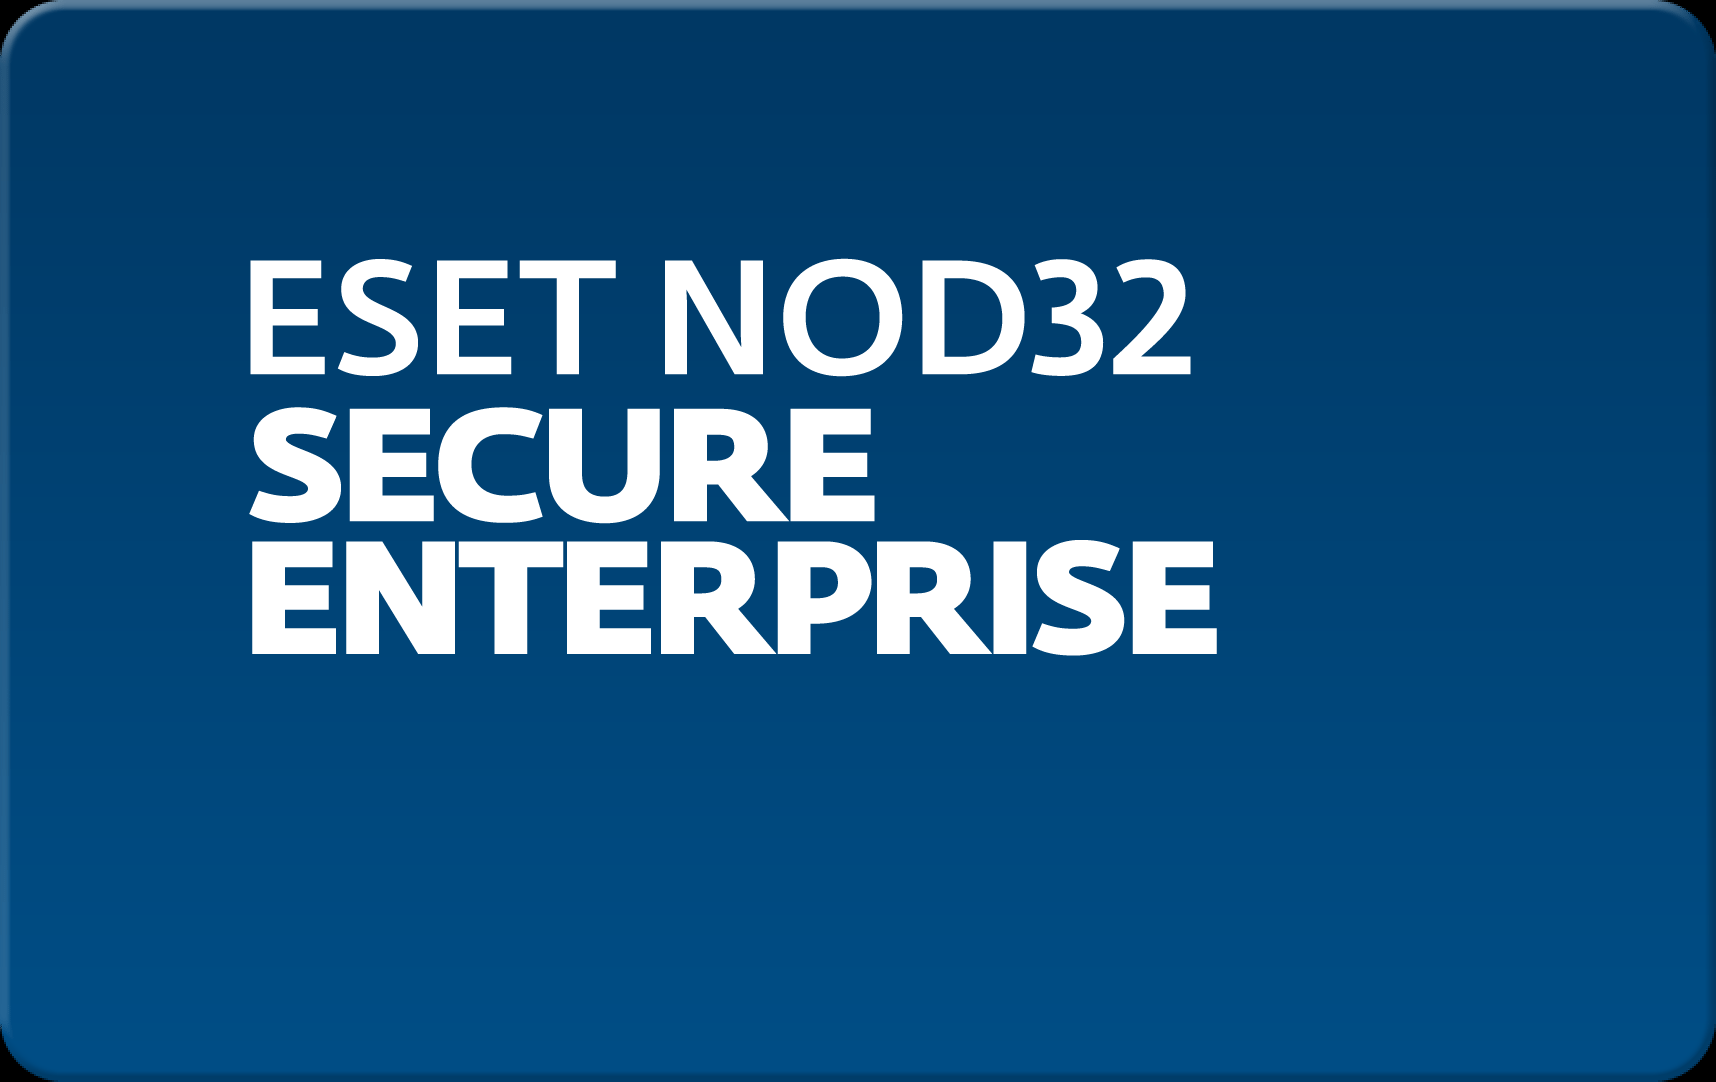        Eset NOD32 Secure Enterprise  158 